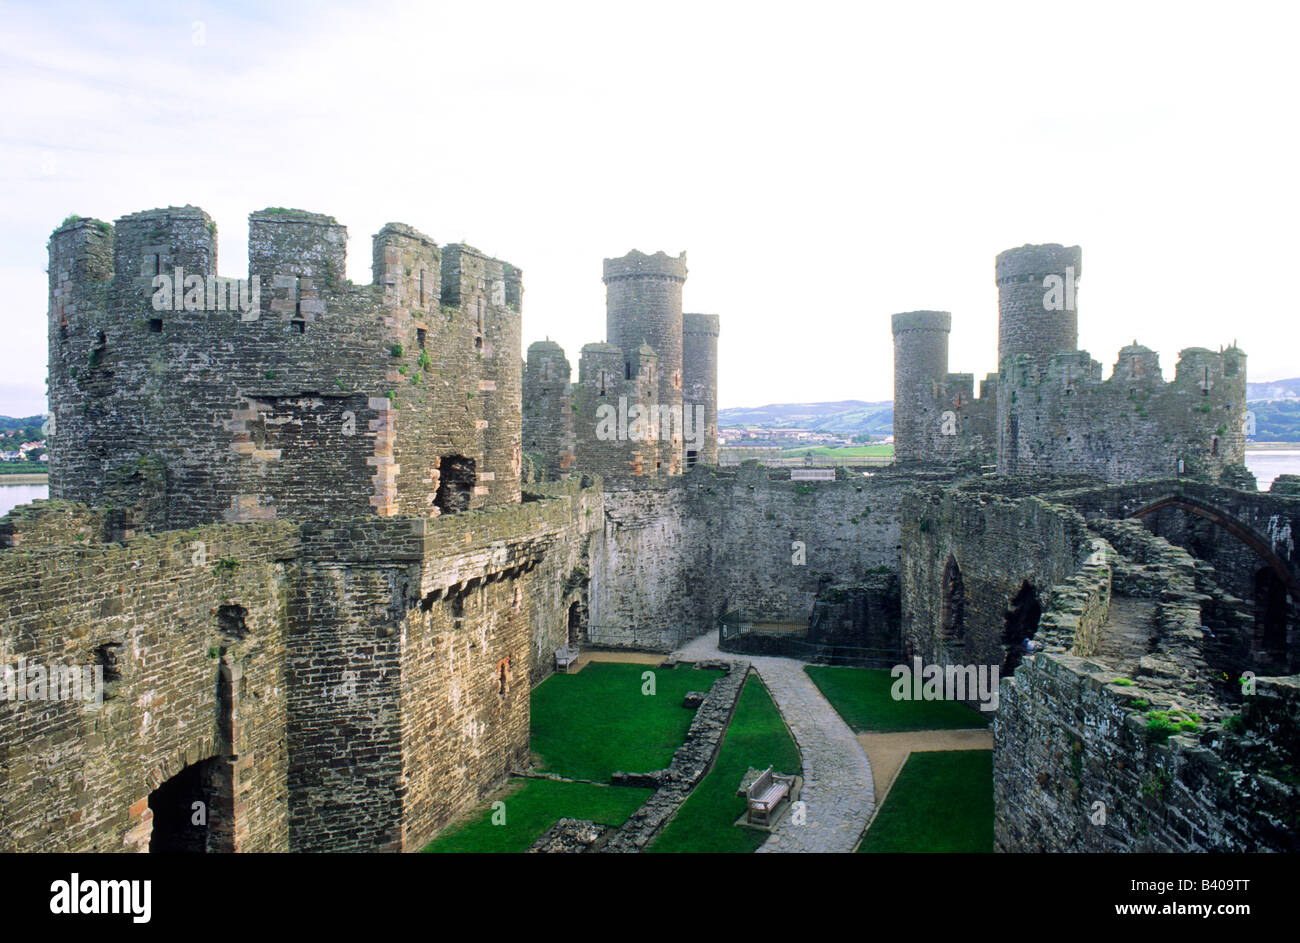 Pays de Galles Conwy Castle Conway de murs en pierre d'architecture médiévale tourelles tours châteaux gallois au Royaume-Uni Banque D'Images